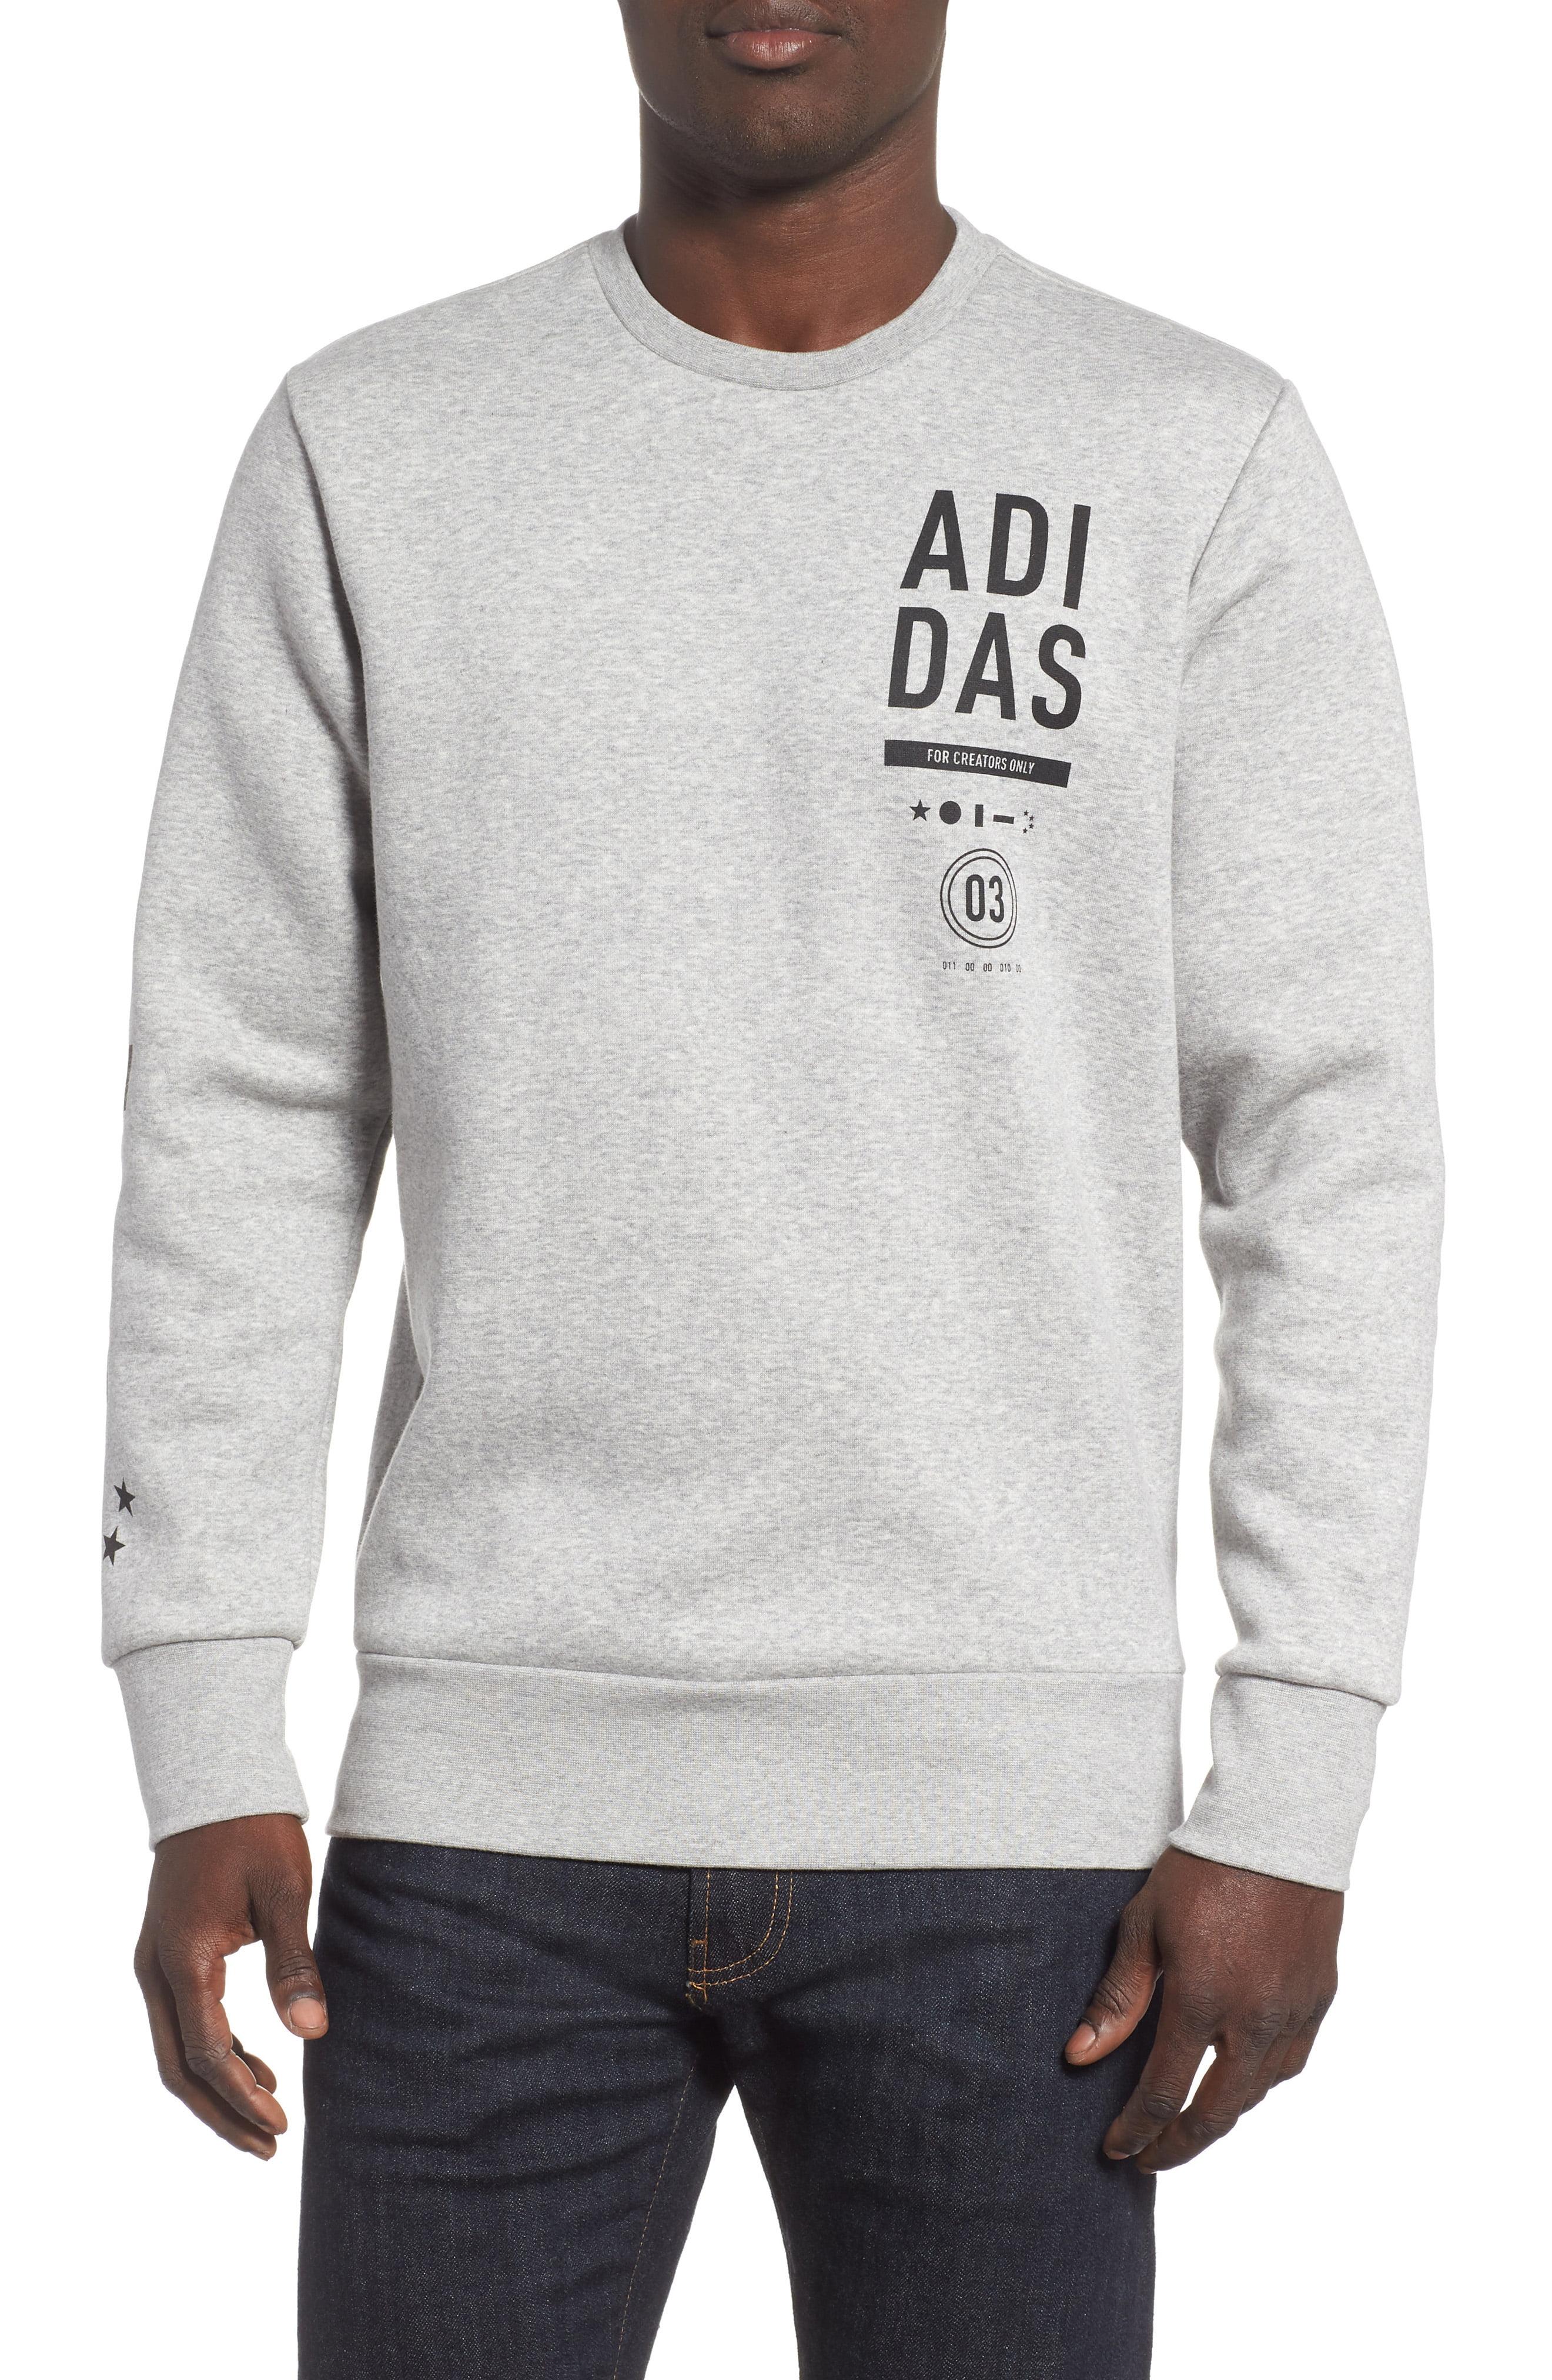 adidas creators only hoodie